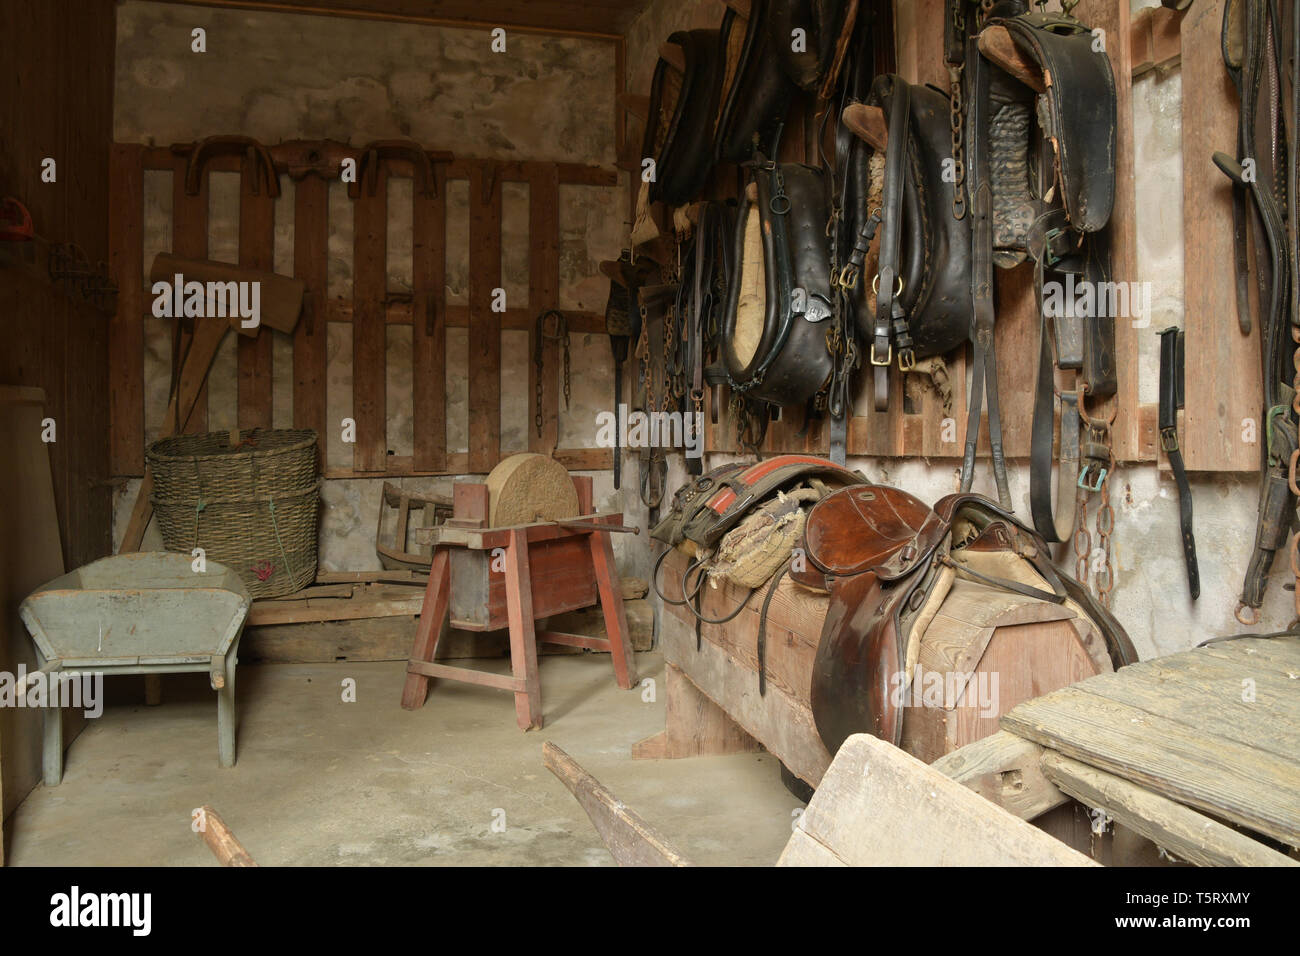 Sellerie de travail contenant des colliers de cheval,cuir,selles, brouettes et autres outils et équipements trouvés dans les écuries du milieu 18e siècle Banque D'Images